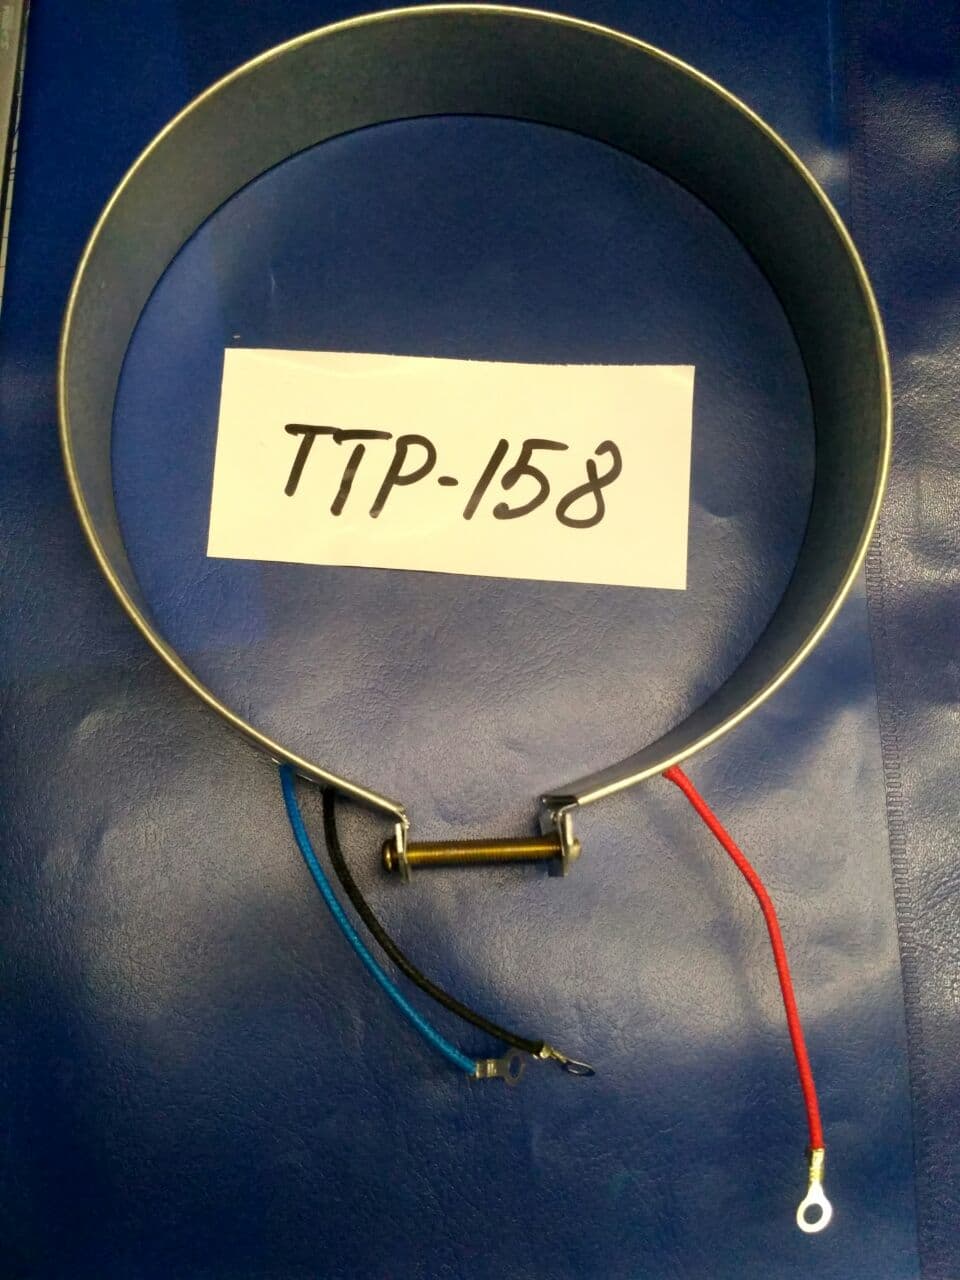 TTP-158